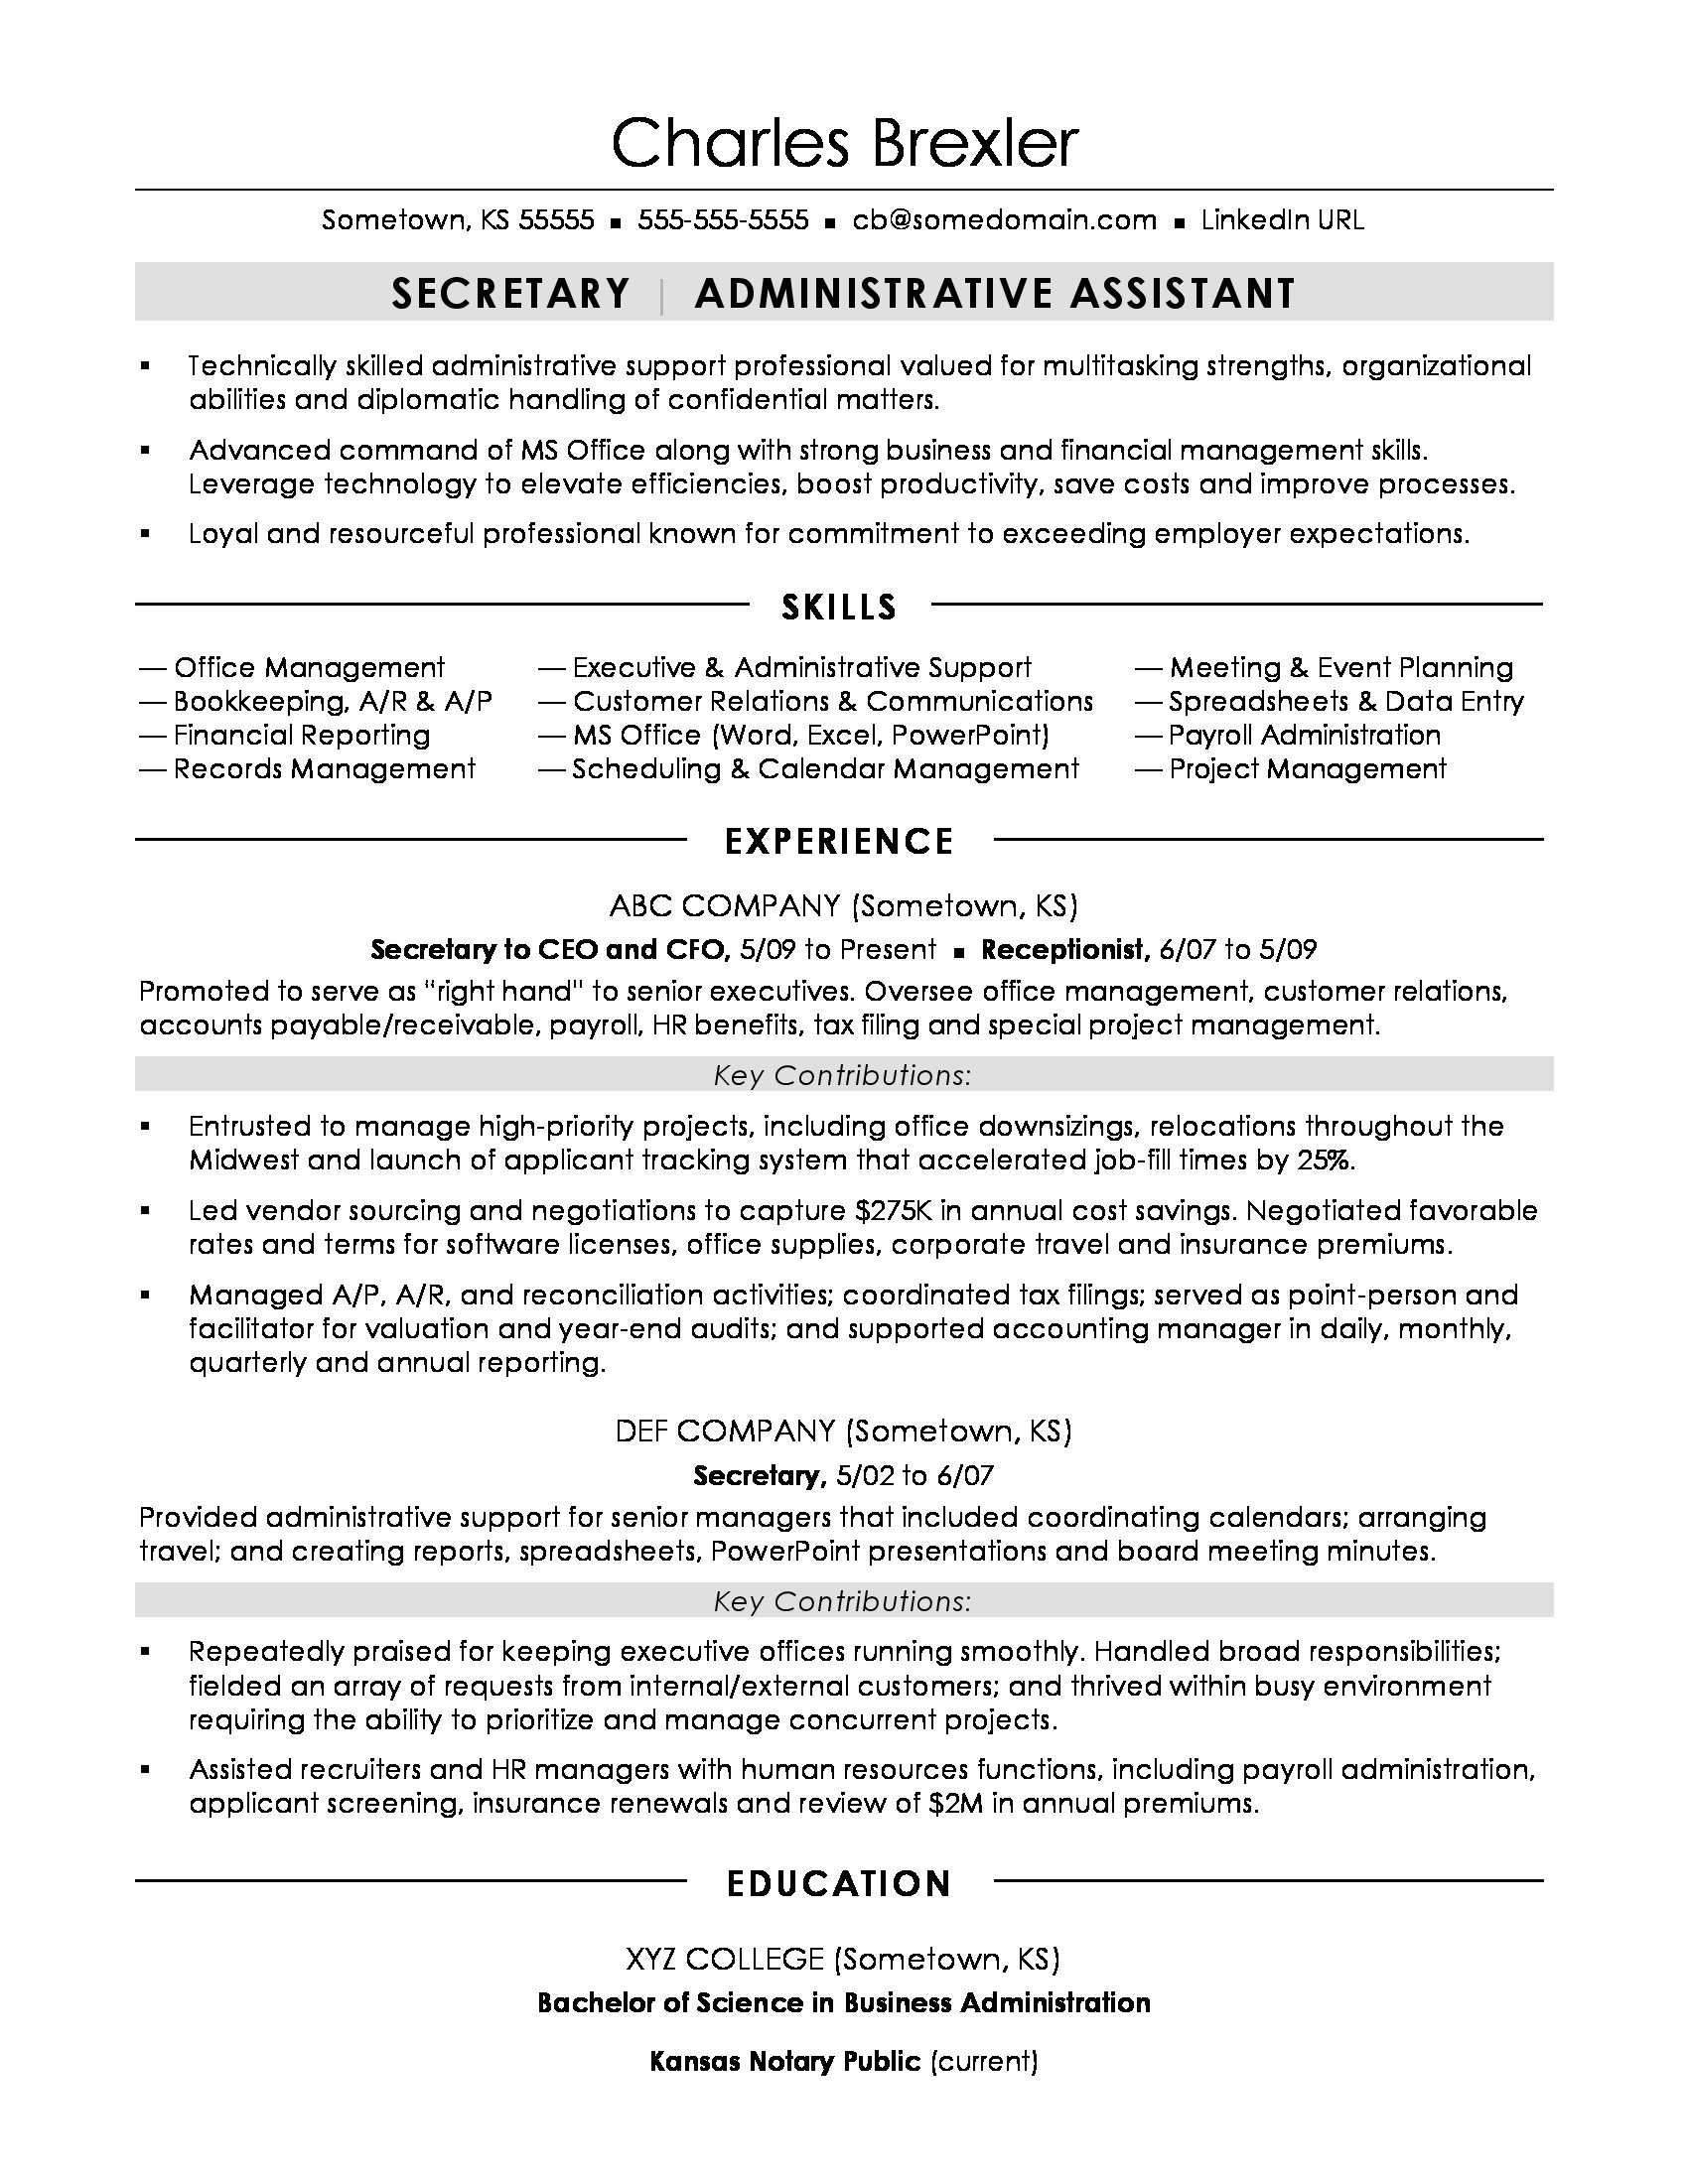 Sample Resume for Secretary In School Secretary Resume Sample Monster.com